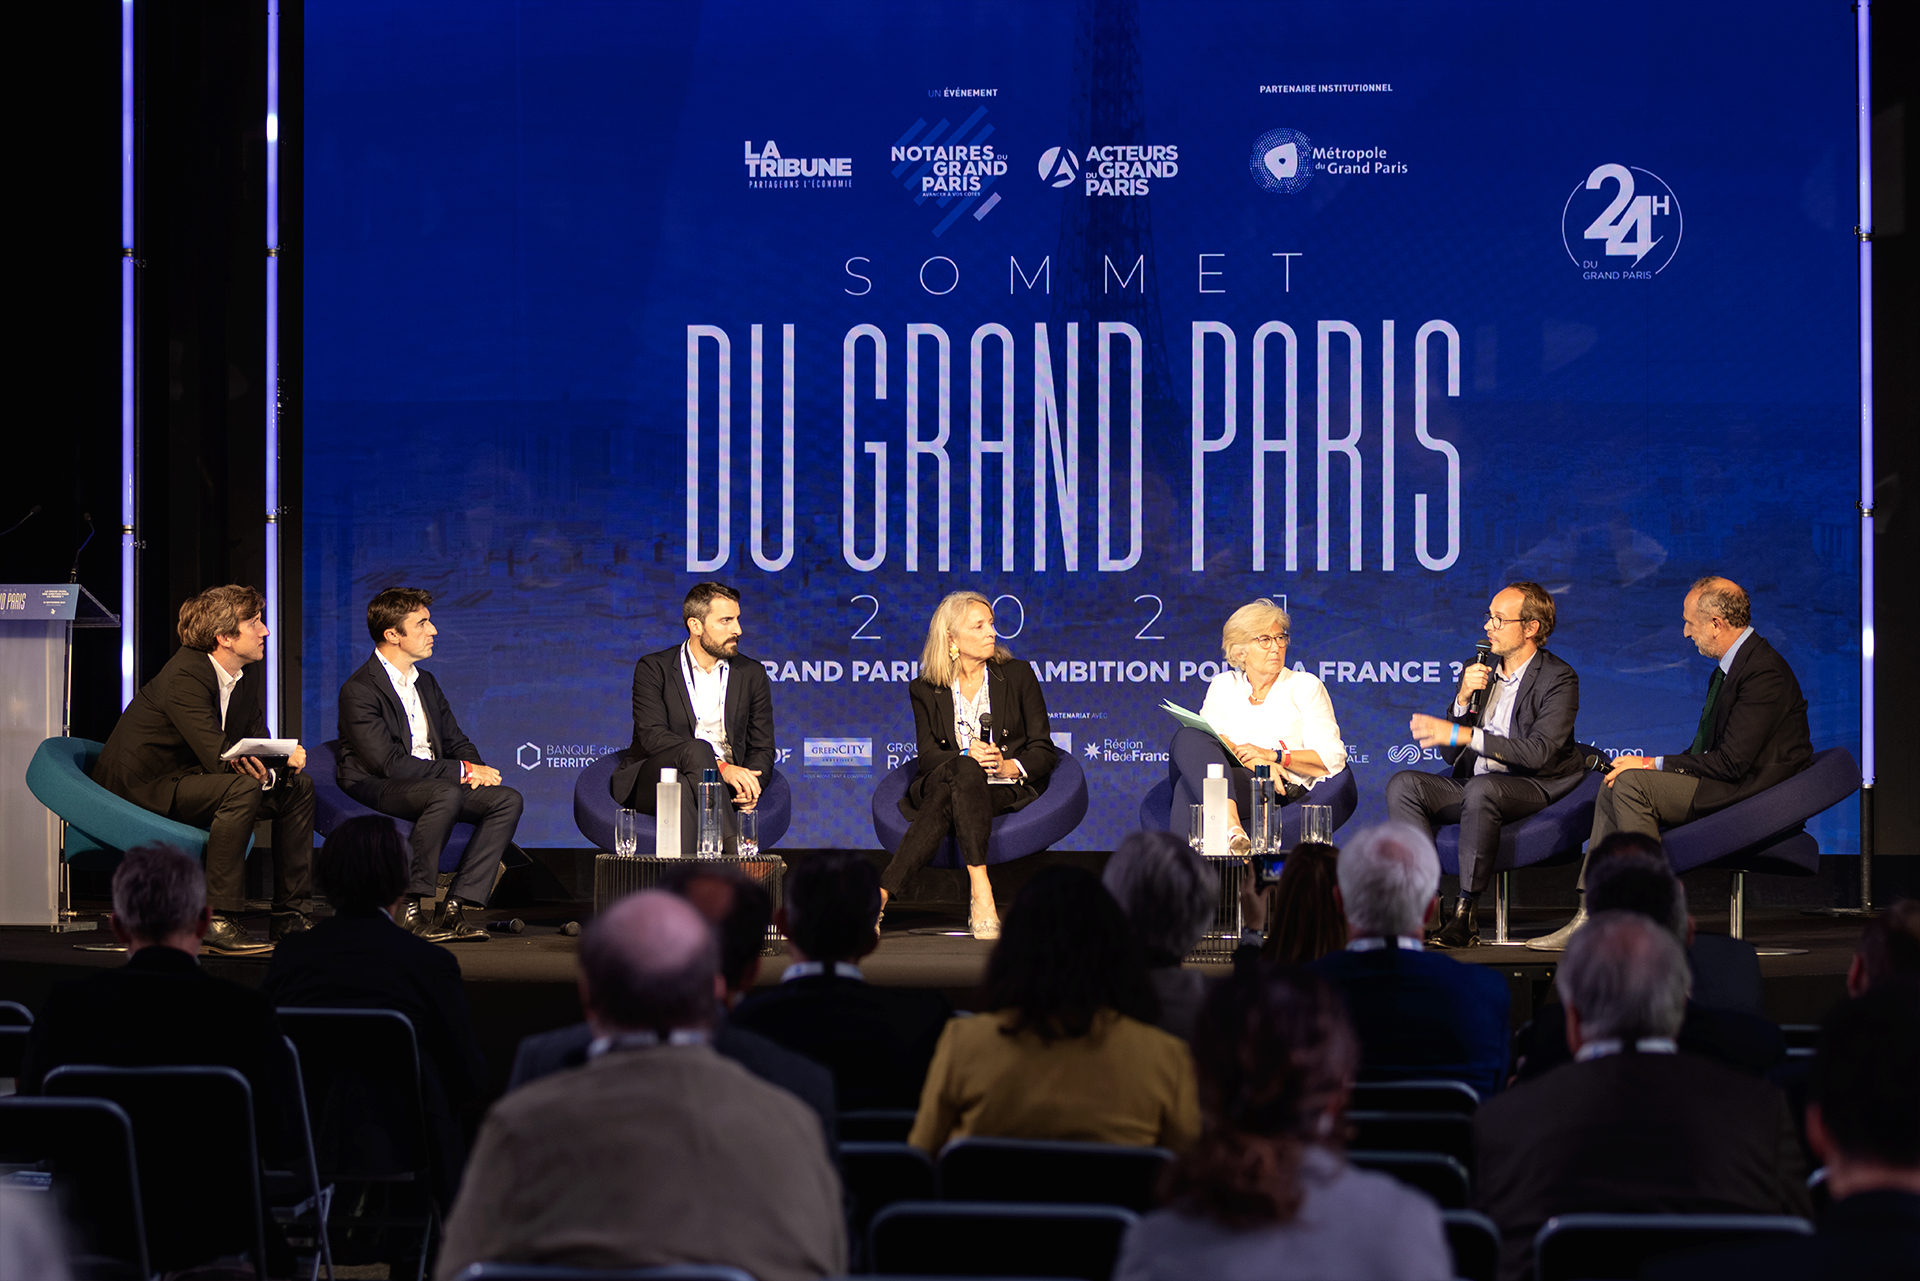 La transition écologique, défi majeur du Grand Paris